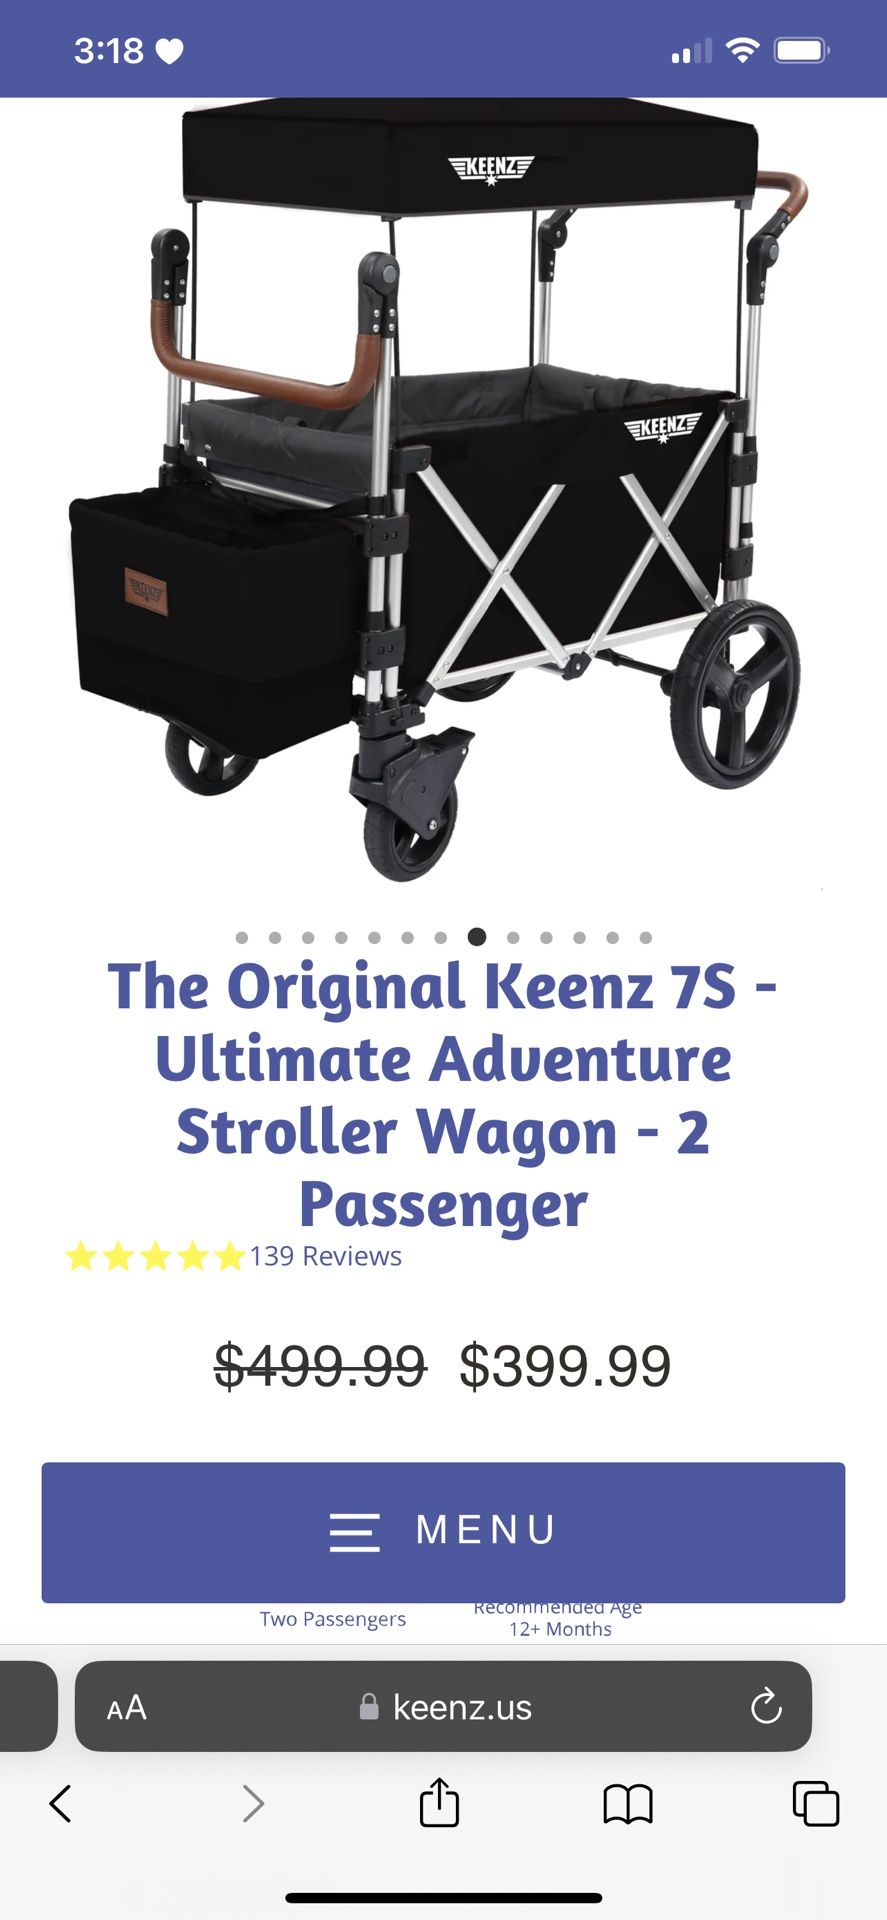 The Original Keenz Stroller Wagon - 2 Passenger 